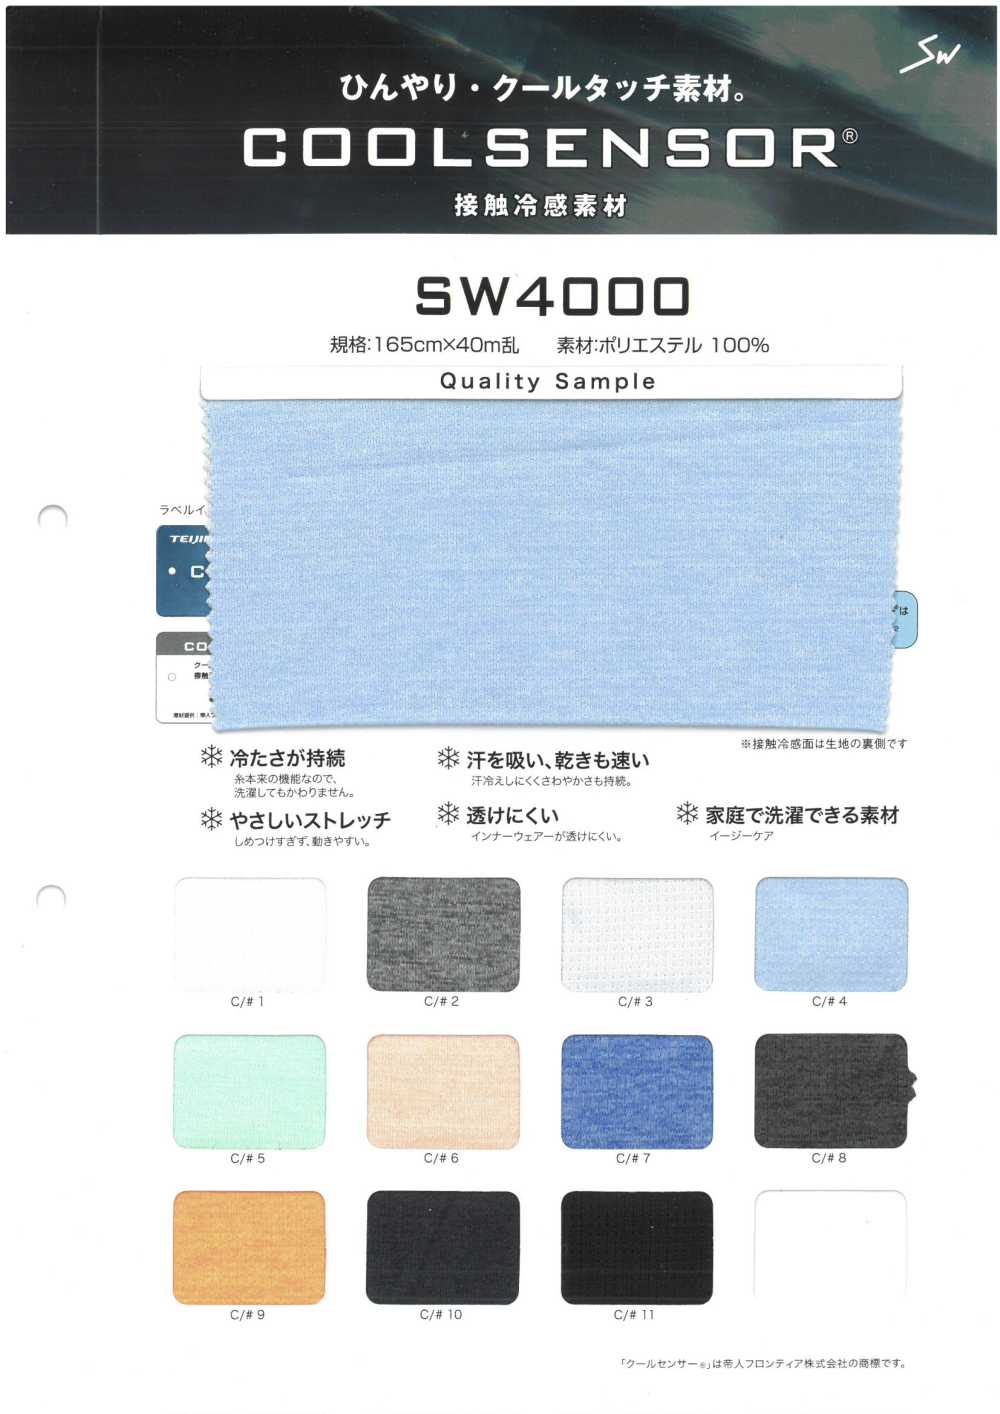 SW4000 Sensore Fantastico[Tessile / Tessuto] Fibre Sanwa